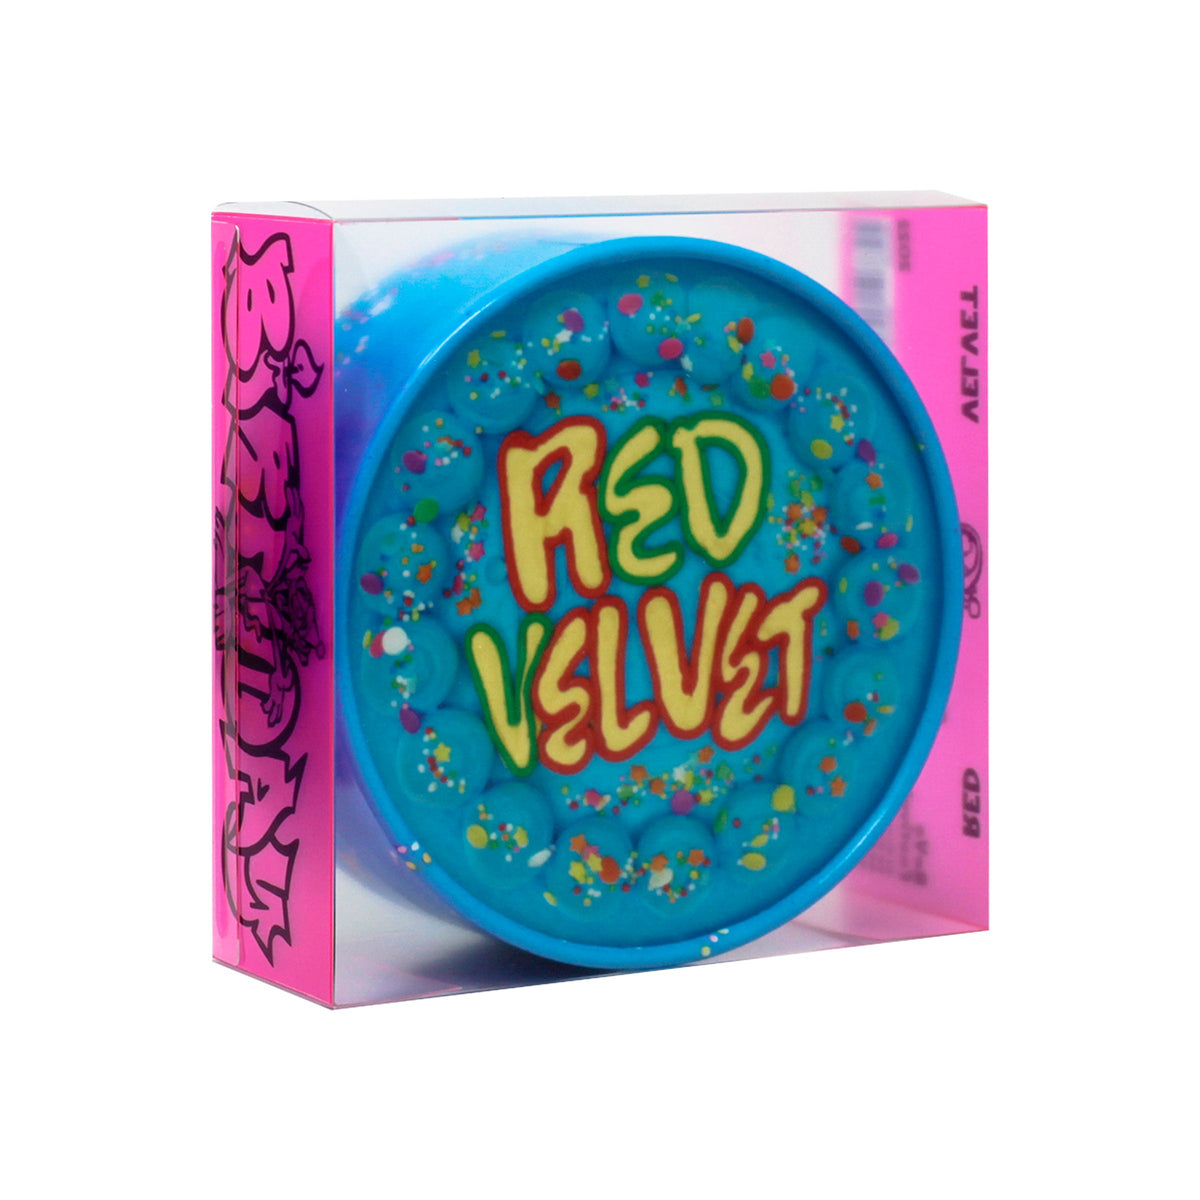 Red Velvet - The ReVe Festival 2022 - Birthday 10th Mini Album - Cake Version - Wendy Ver - main image